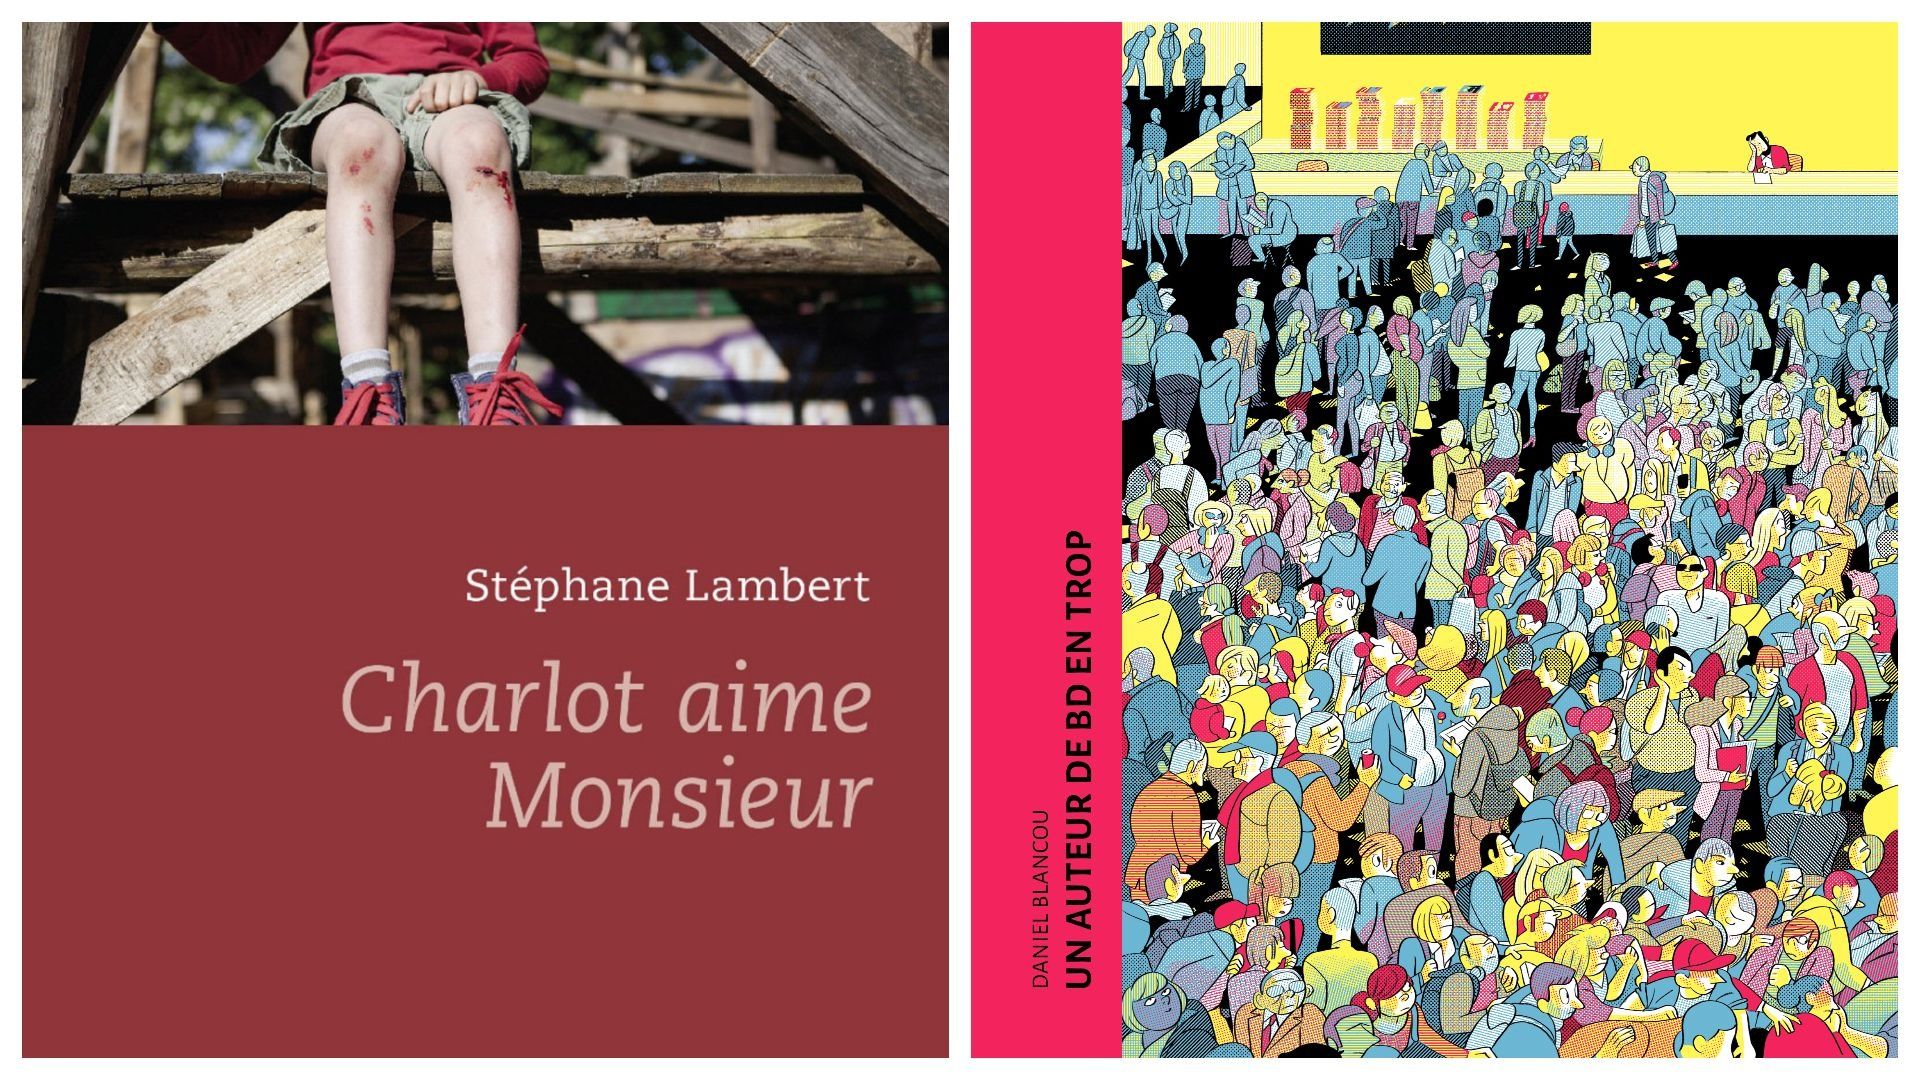 Couvertures de "Charlot aime Monsieur" (Stéphane Lambert) et "Un auteur de bd en trop" (Daniel Blancou)